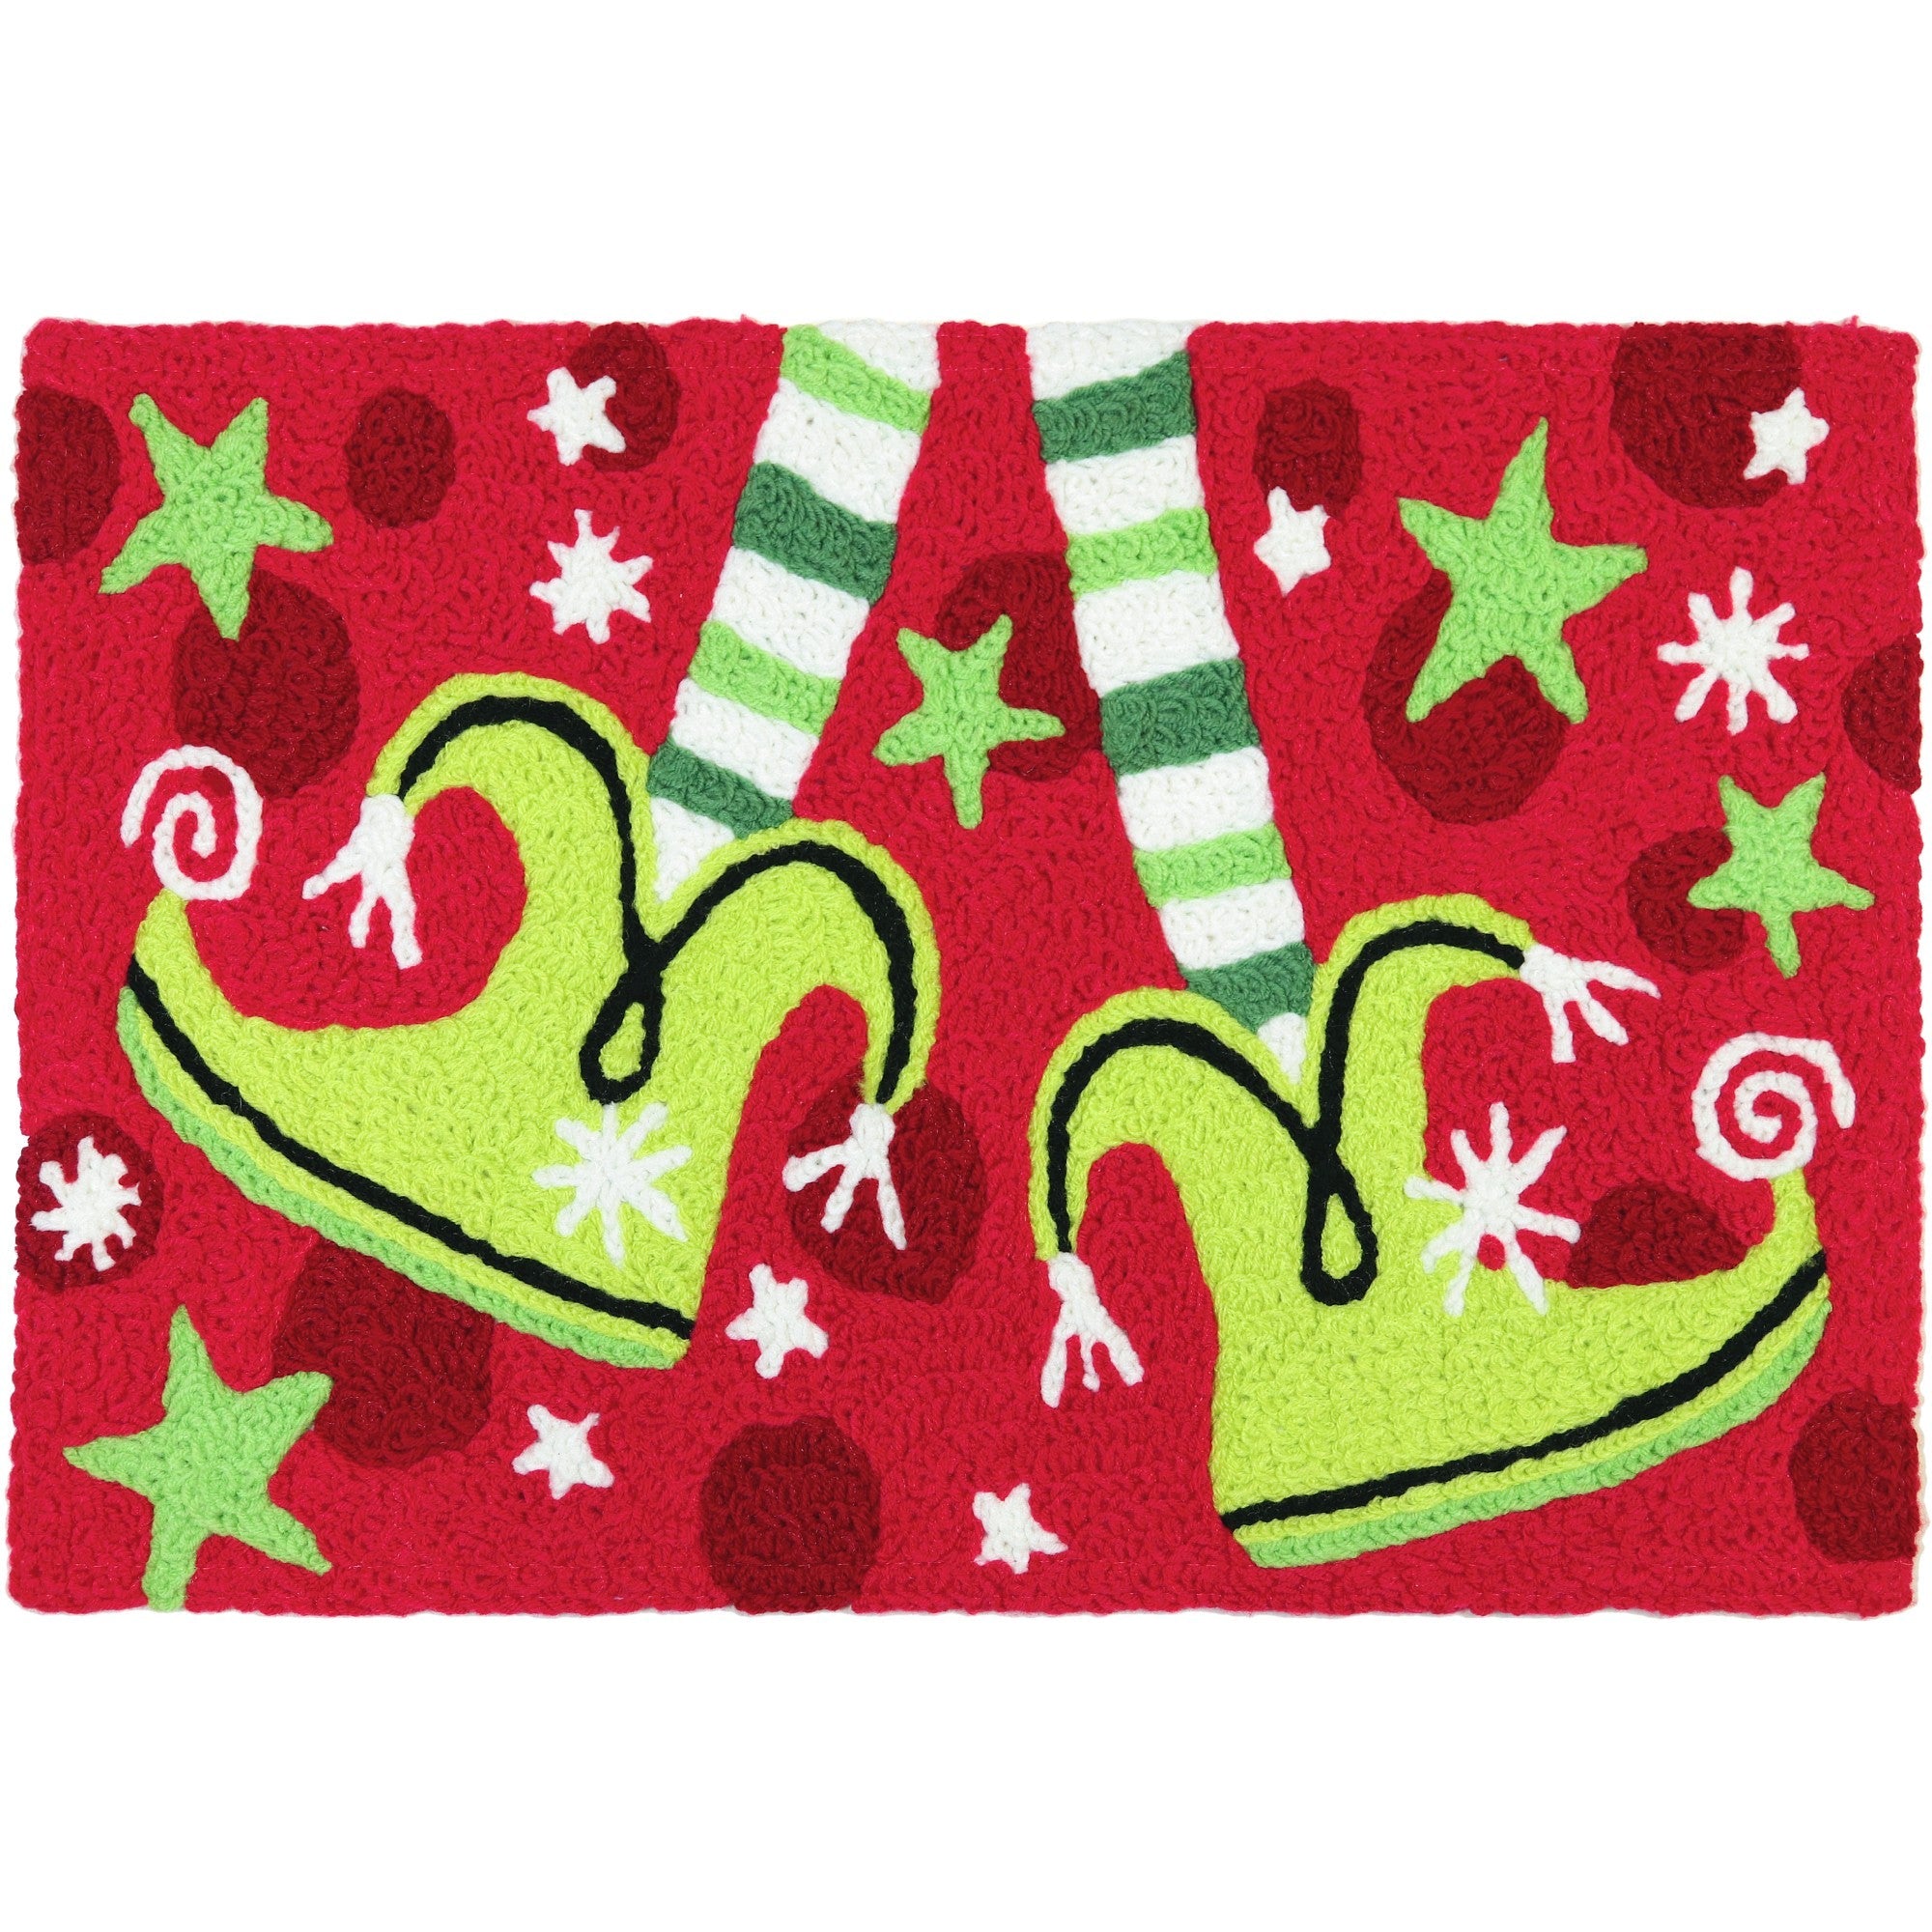 Dancing Elfin Feet Jellybean Accent Rug with Elf Feet Christmas Rug 20"x30" Doormat